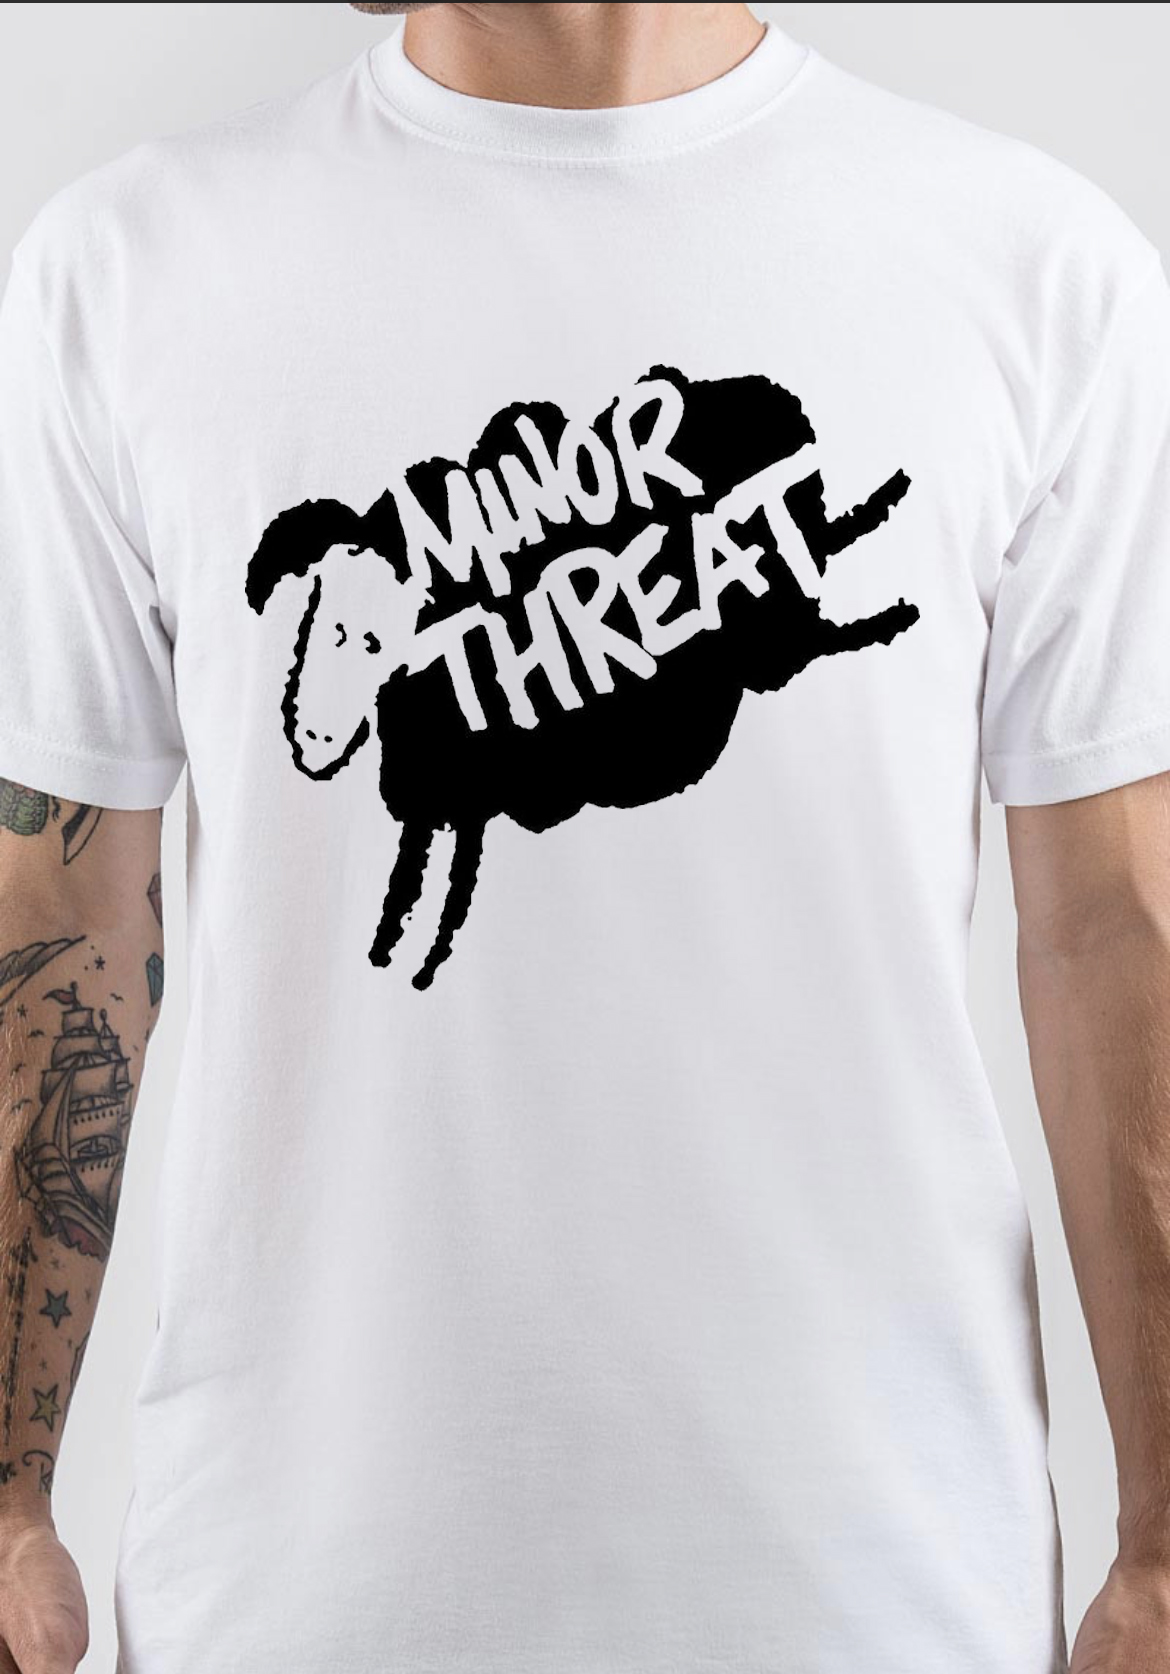 Minor Threat T-Shirt And Merchandise